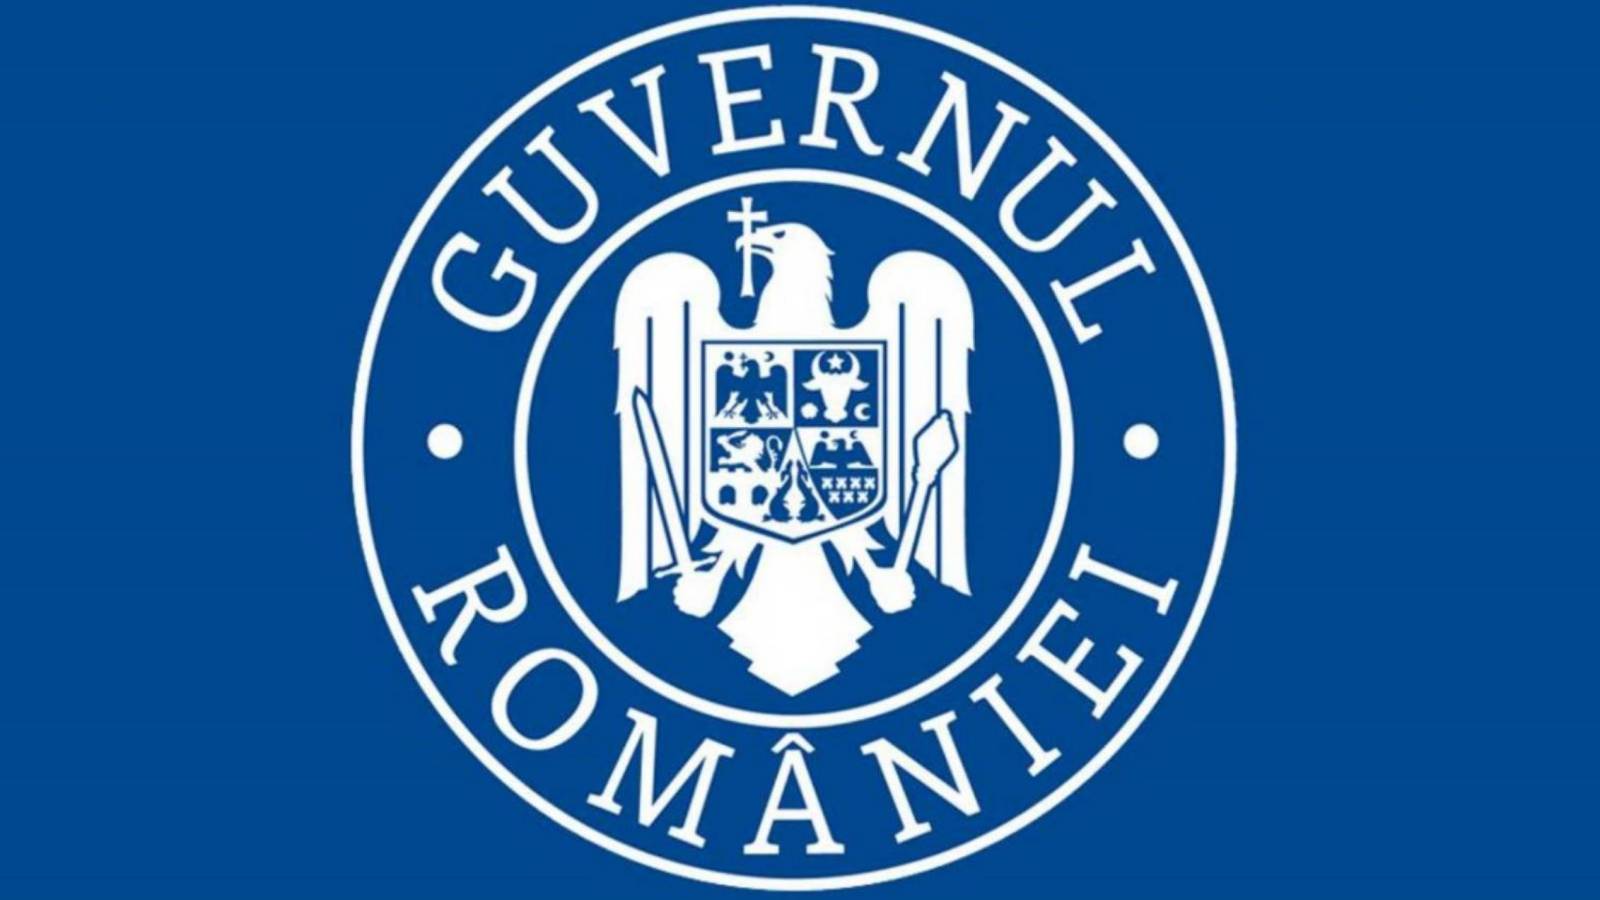 El gobierno rumano retira las restricciones